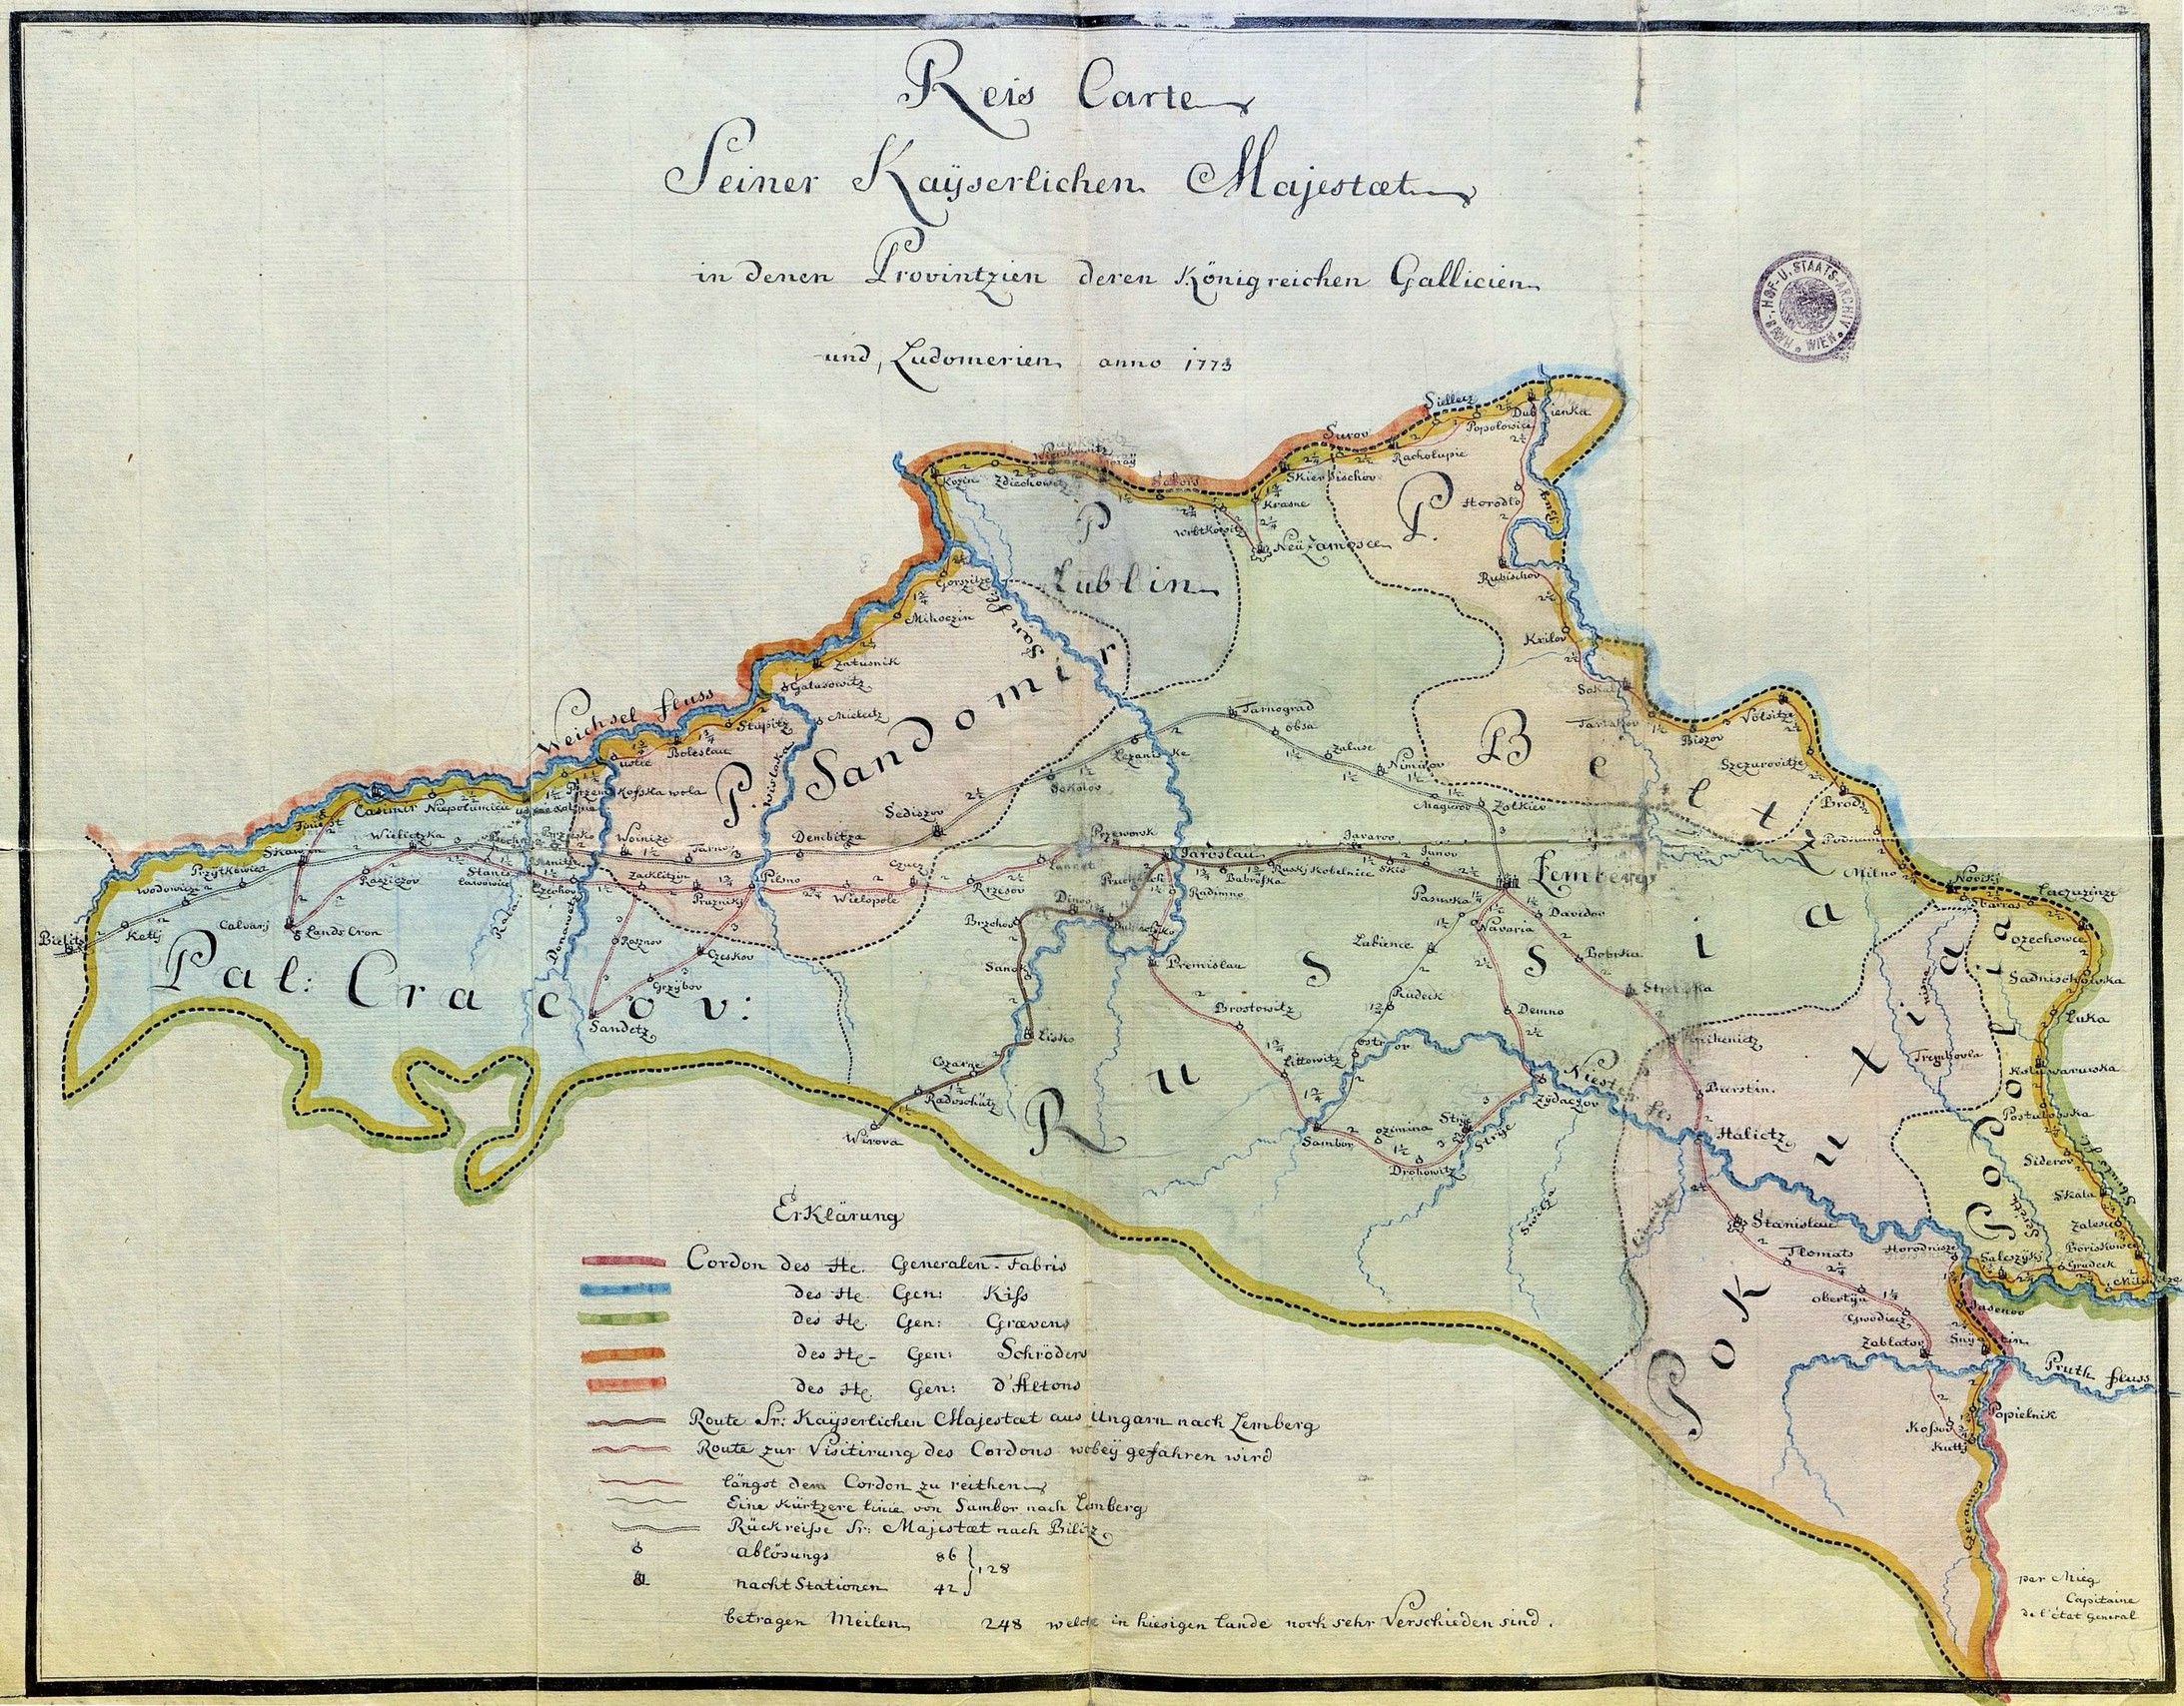 Reisekarte für die erste Inspektionsreise von Kaiser Joseph II. durch Galizien, 1773, © Haus-, Hof- und Staatsarchiv, Wien


